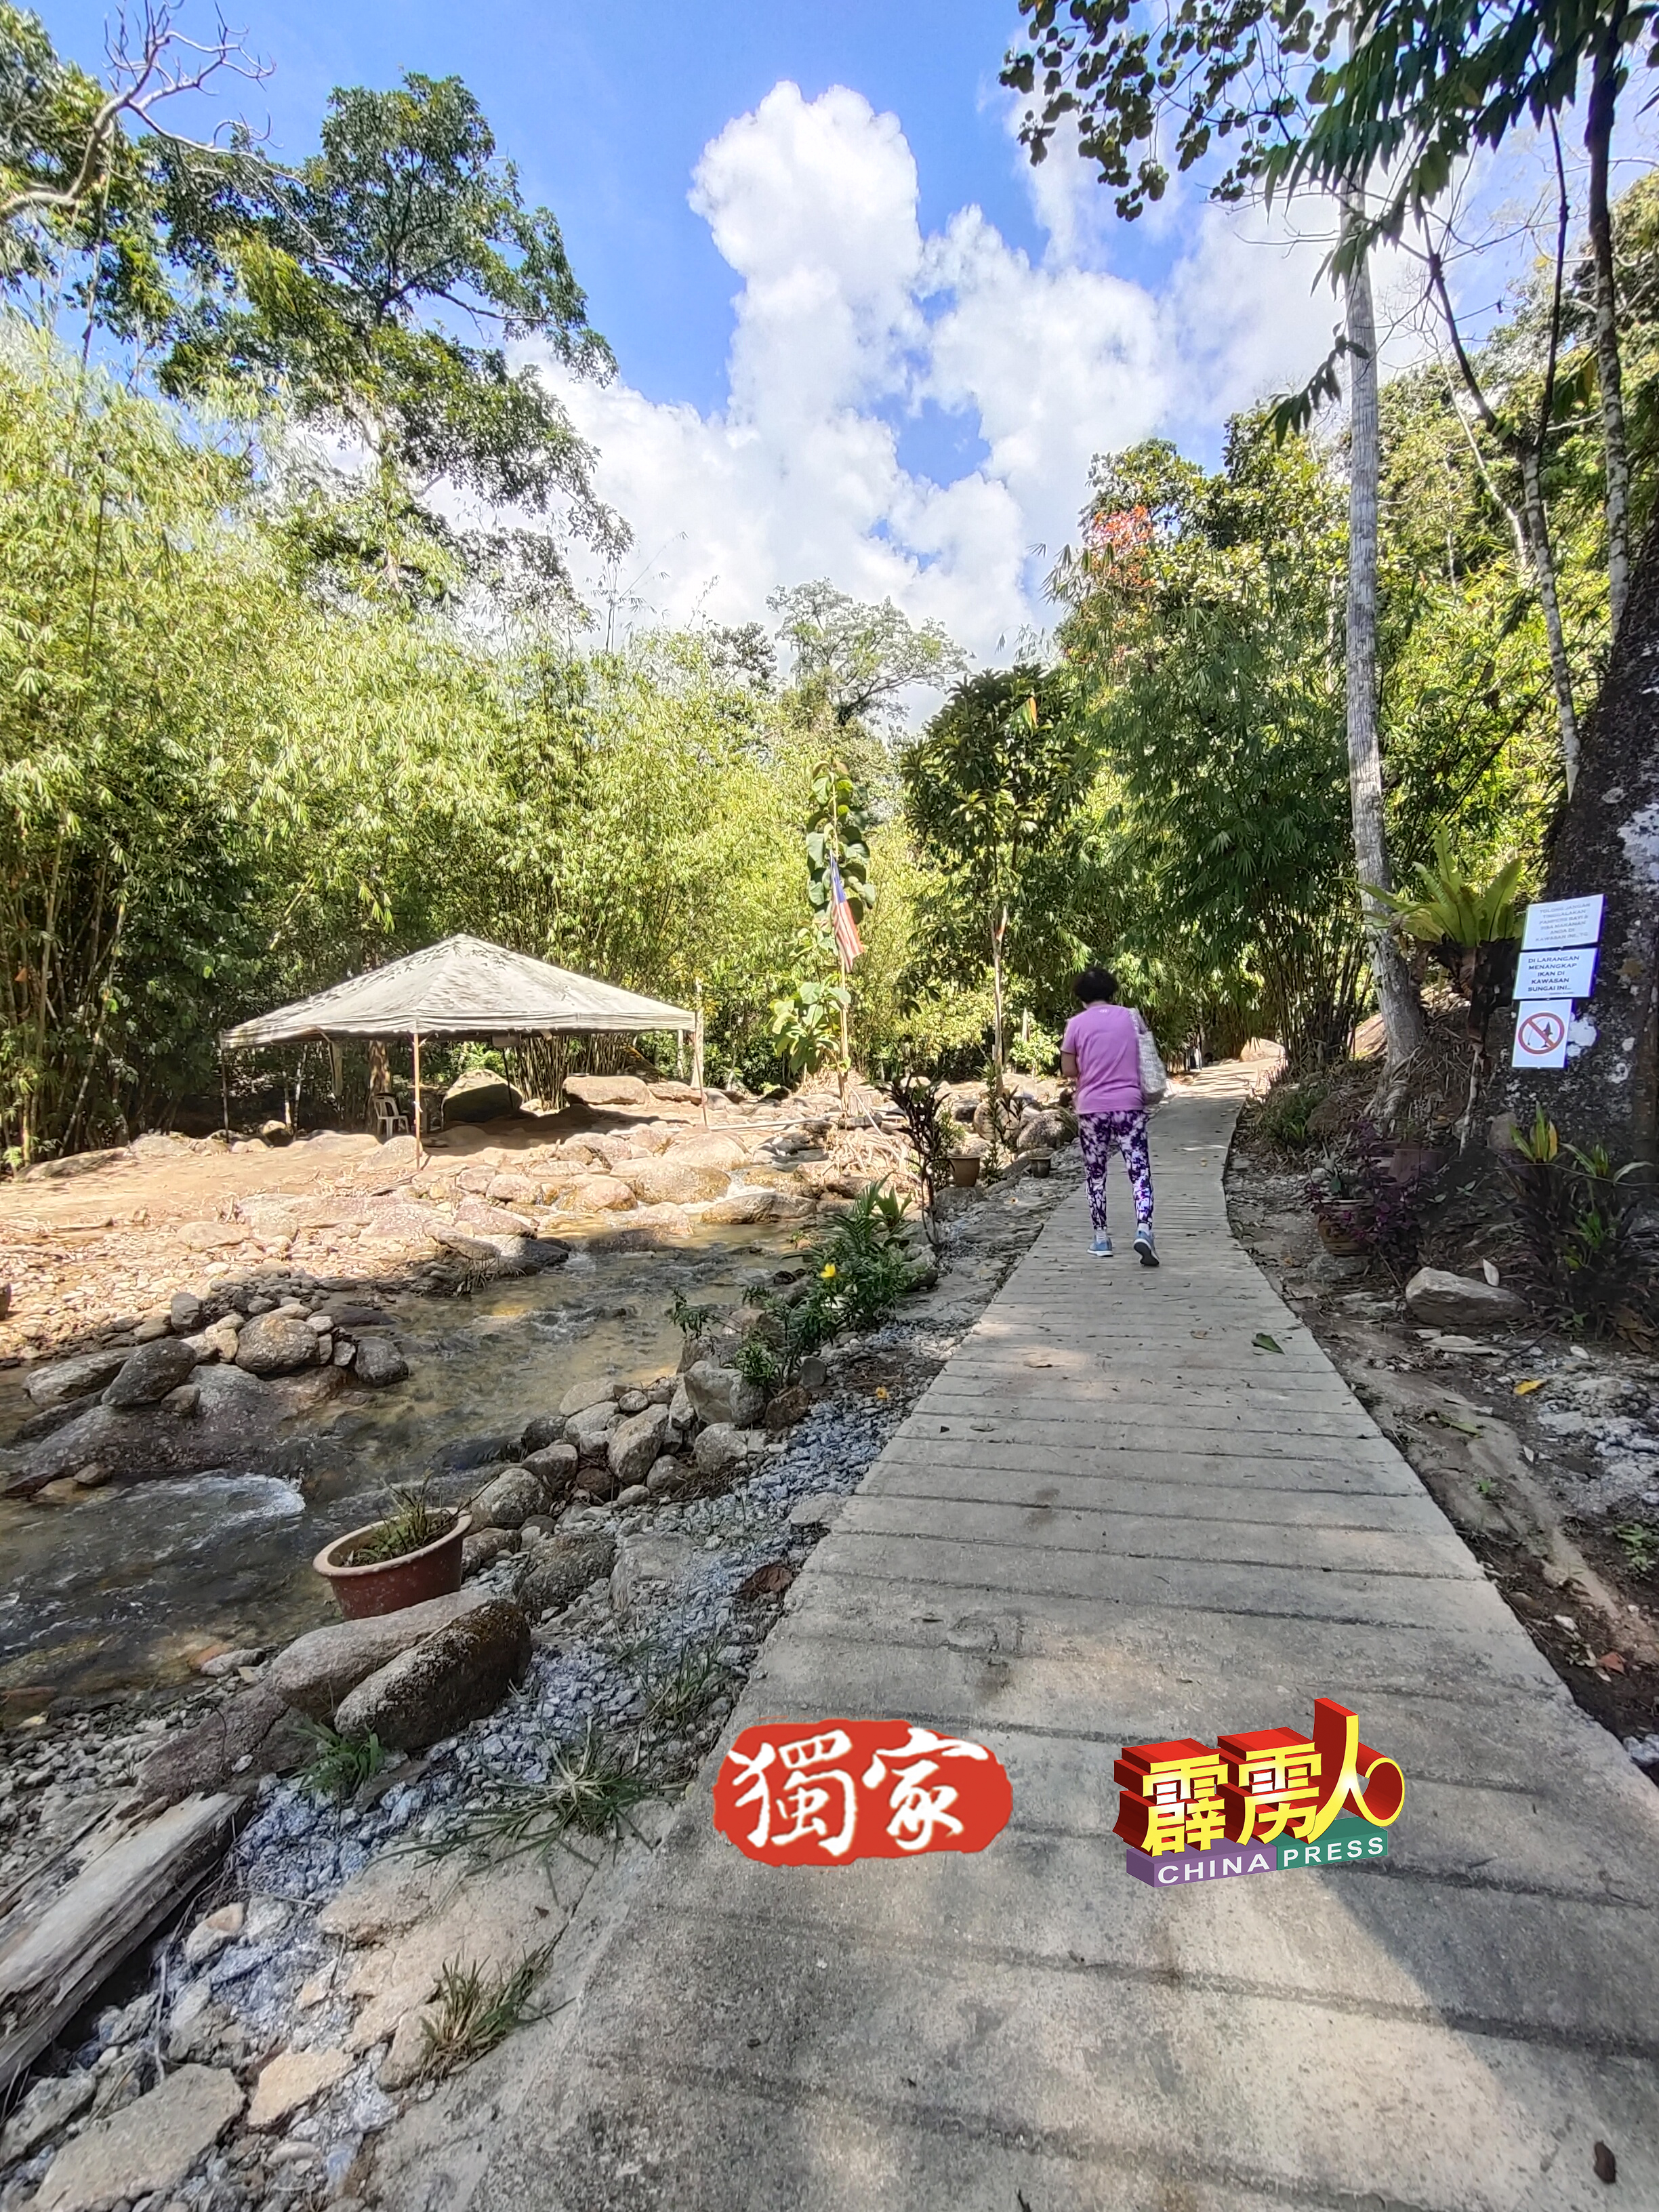 瀑布的美化工程，包括铺了一条甬道，更方便游客行走。